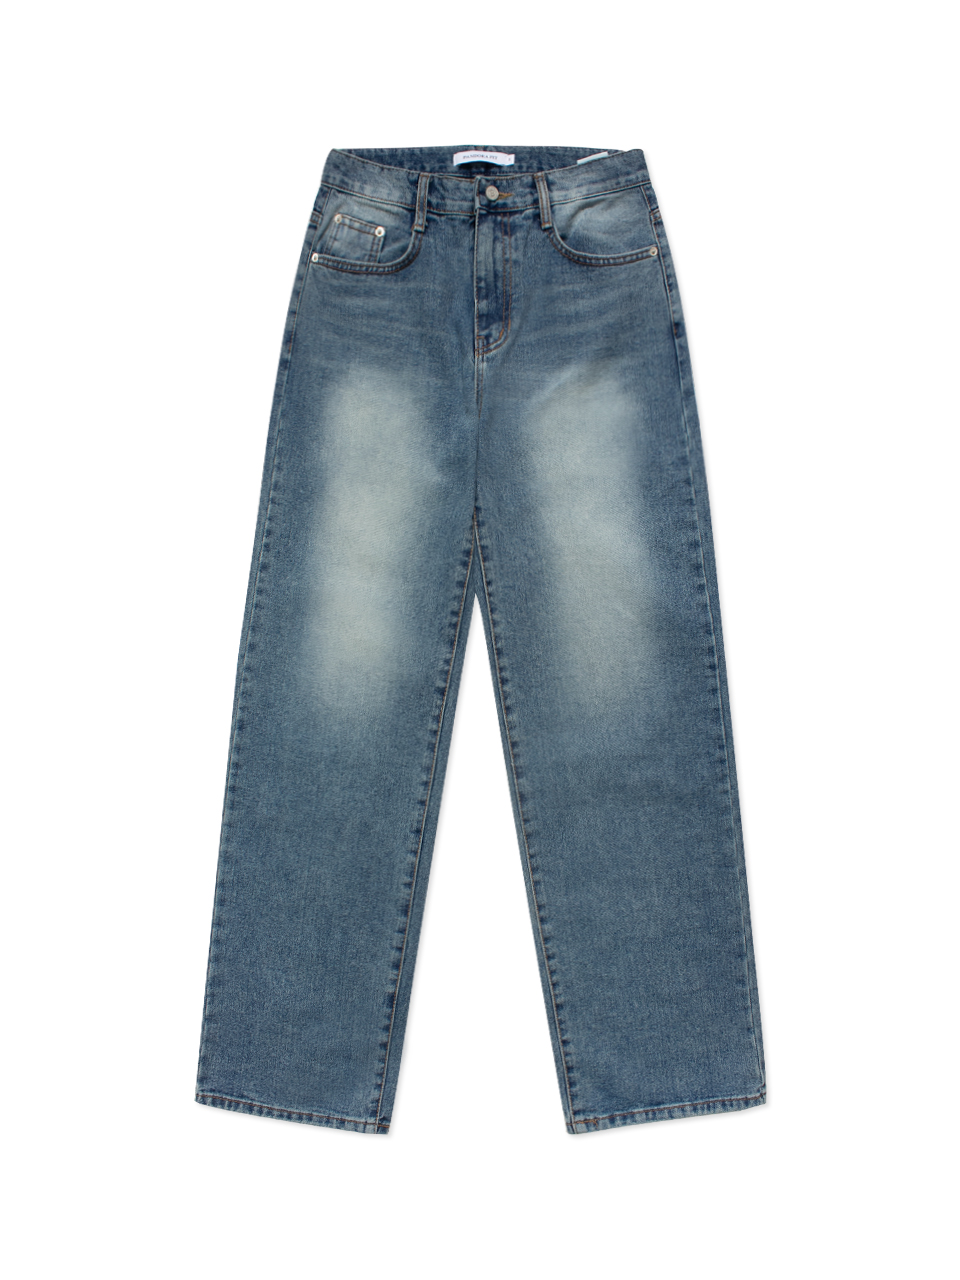 [WIDE] Kanas Jeans